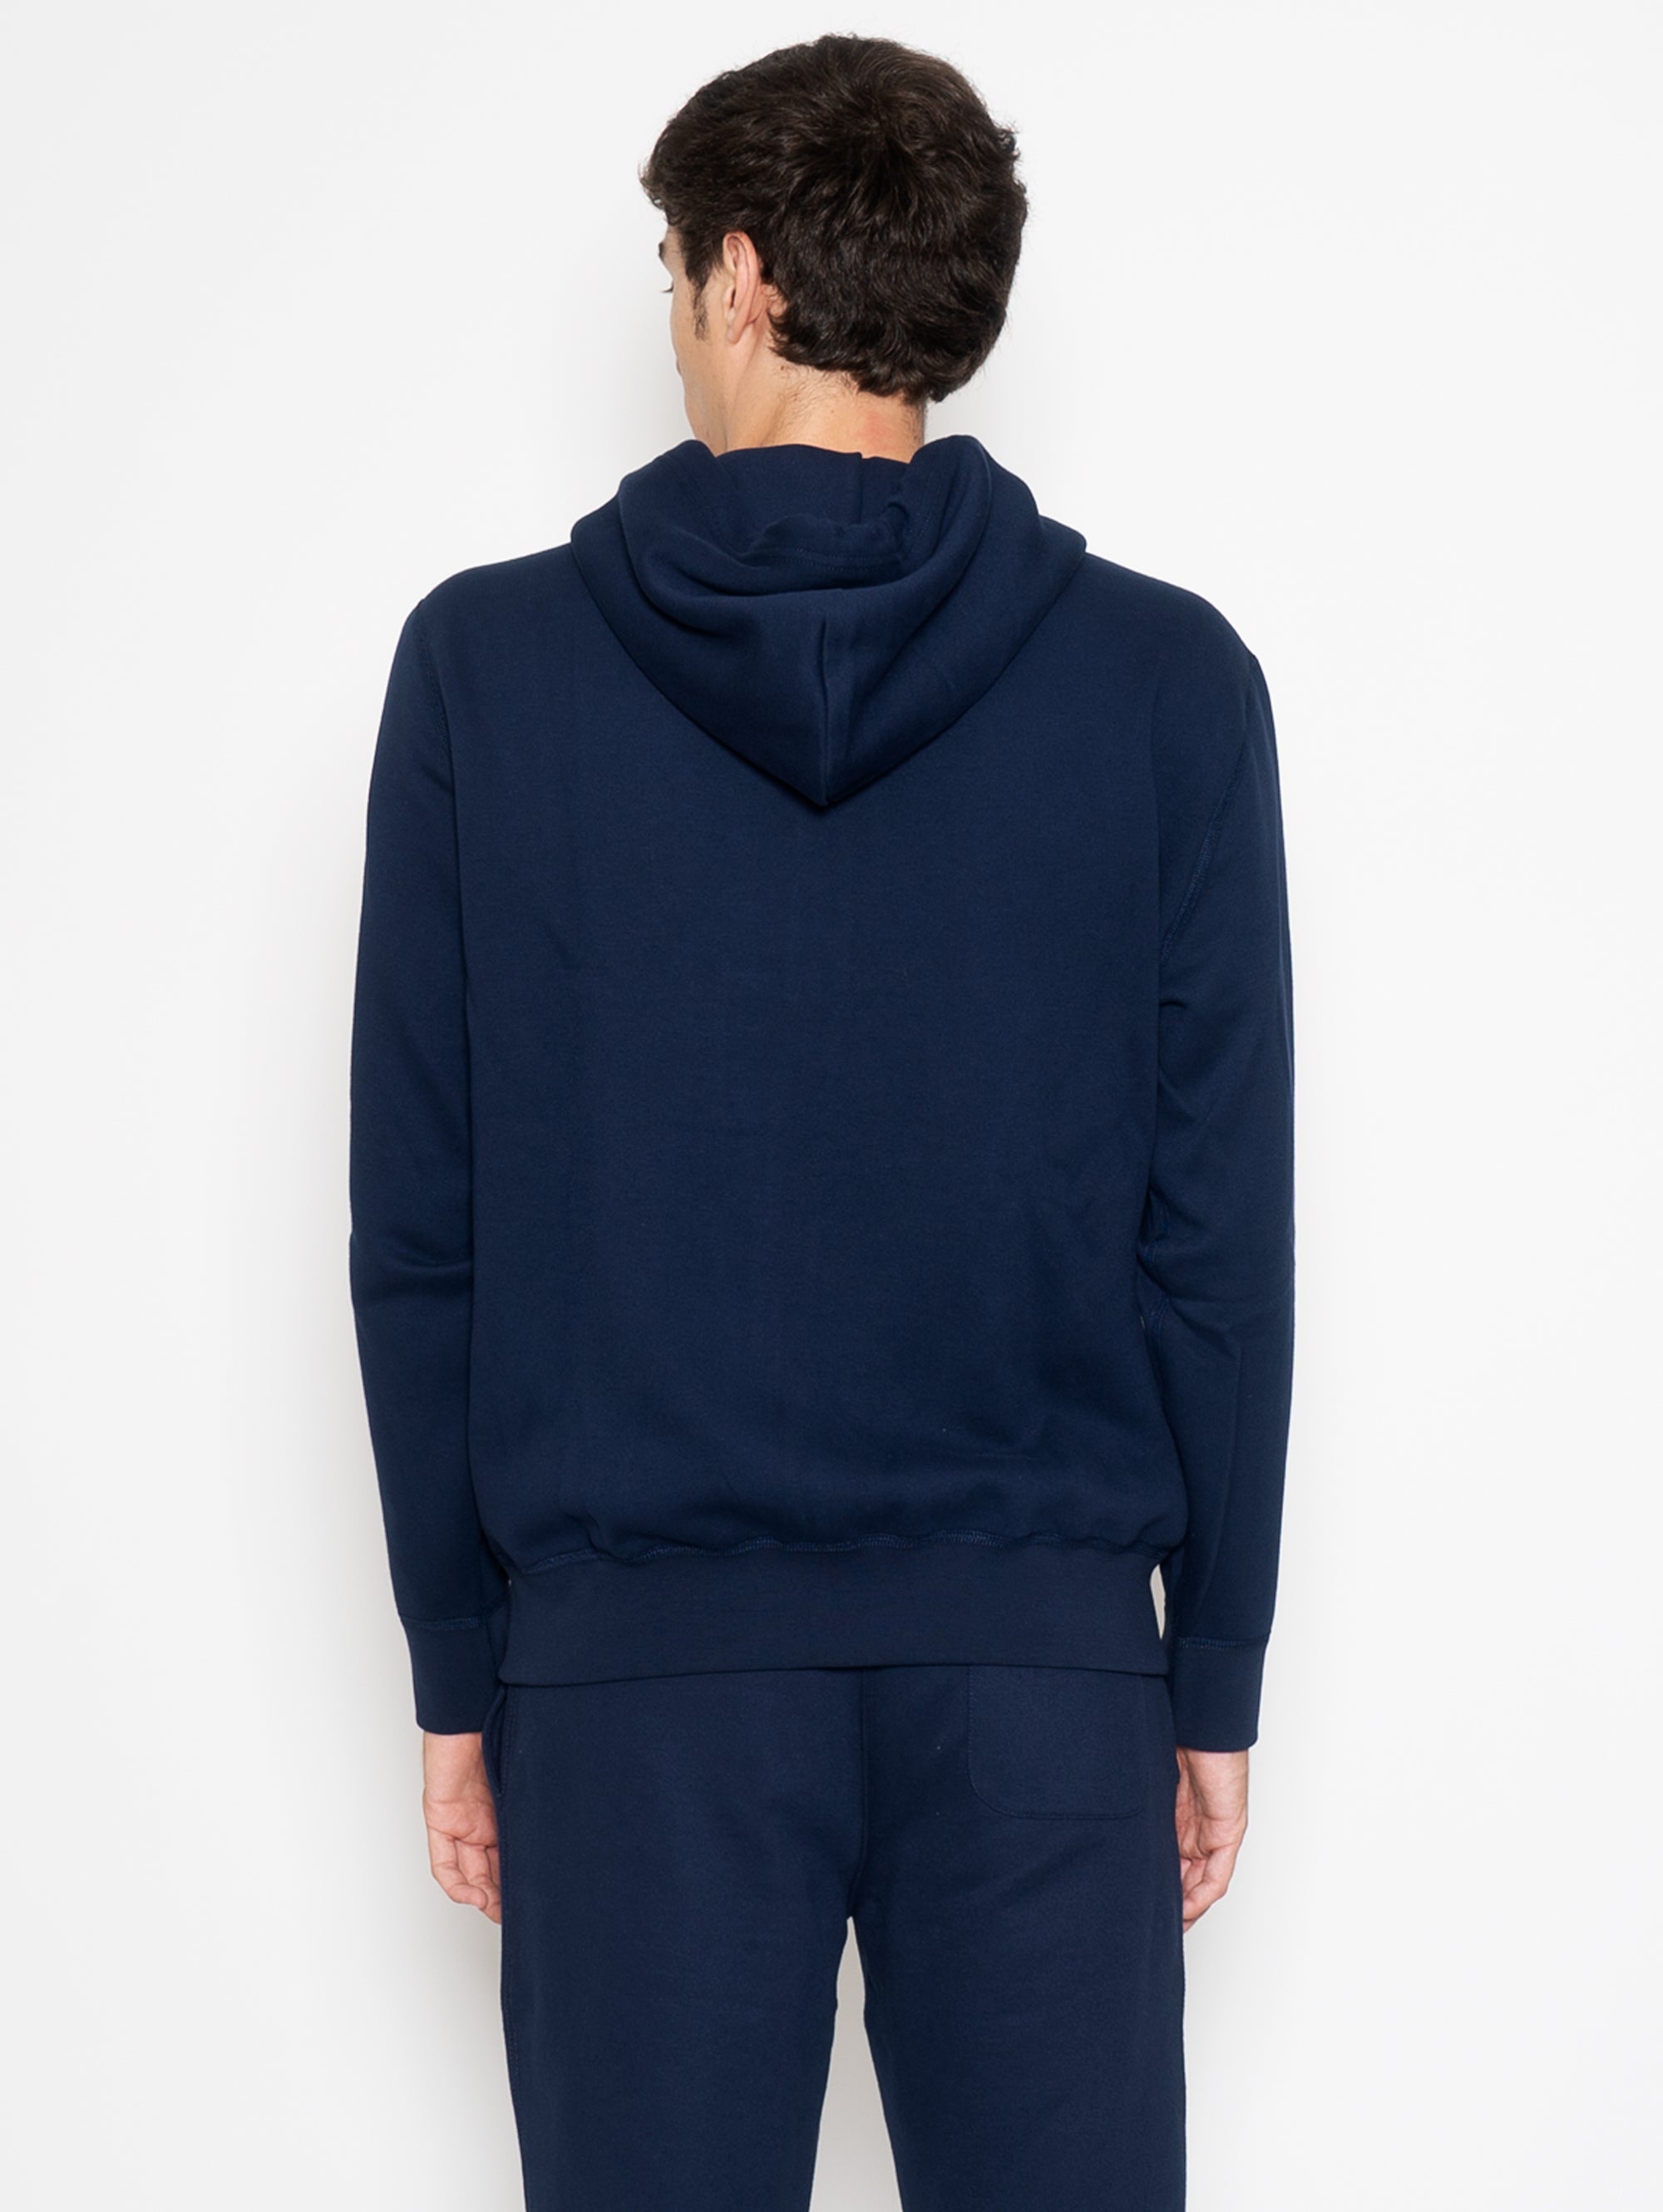 Sweatshirt with Zip and Blue Hood